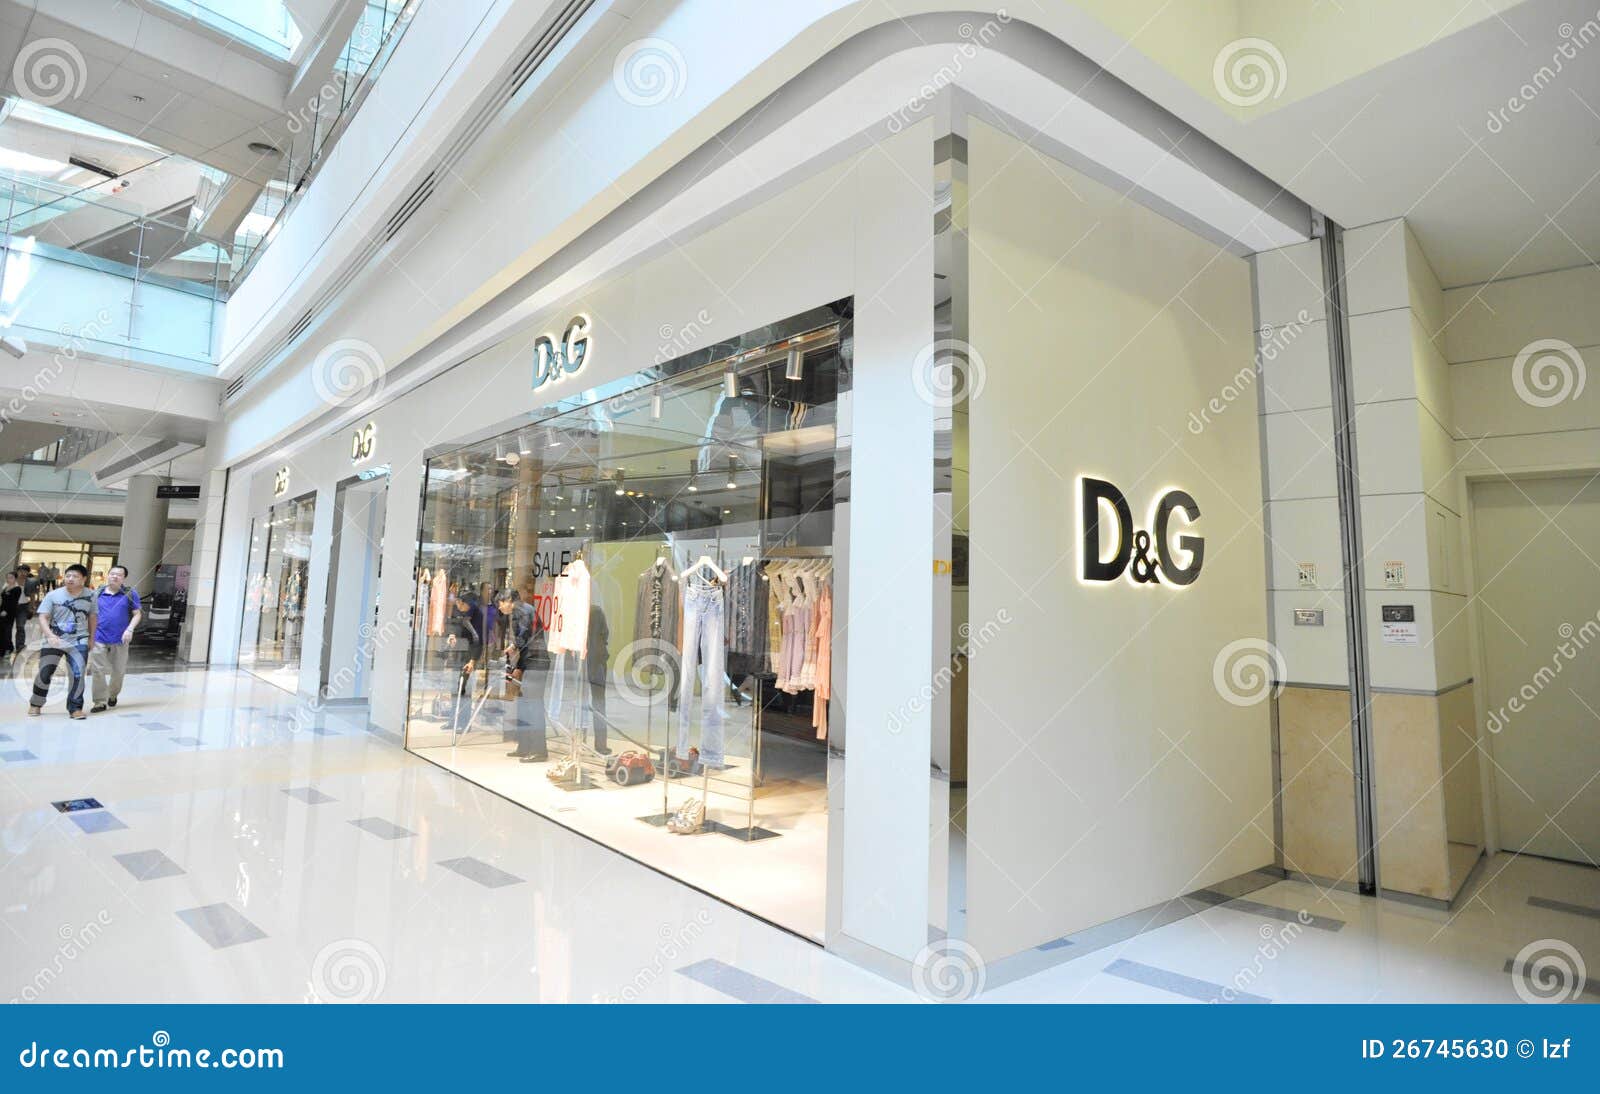 d&g shop